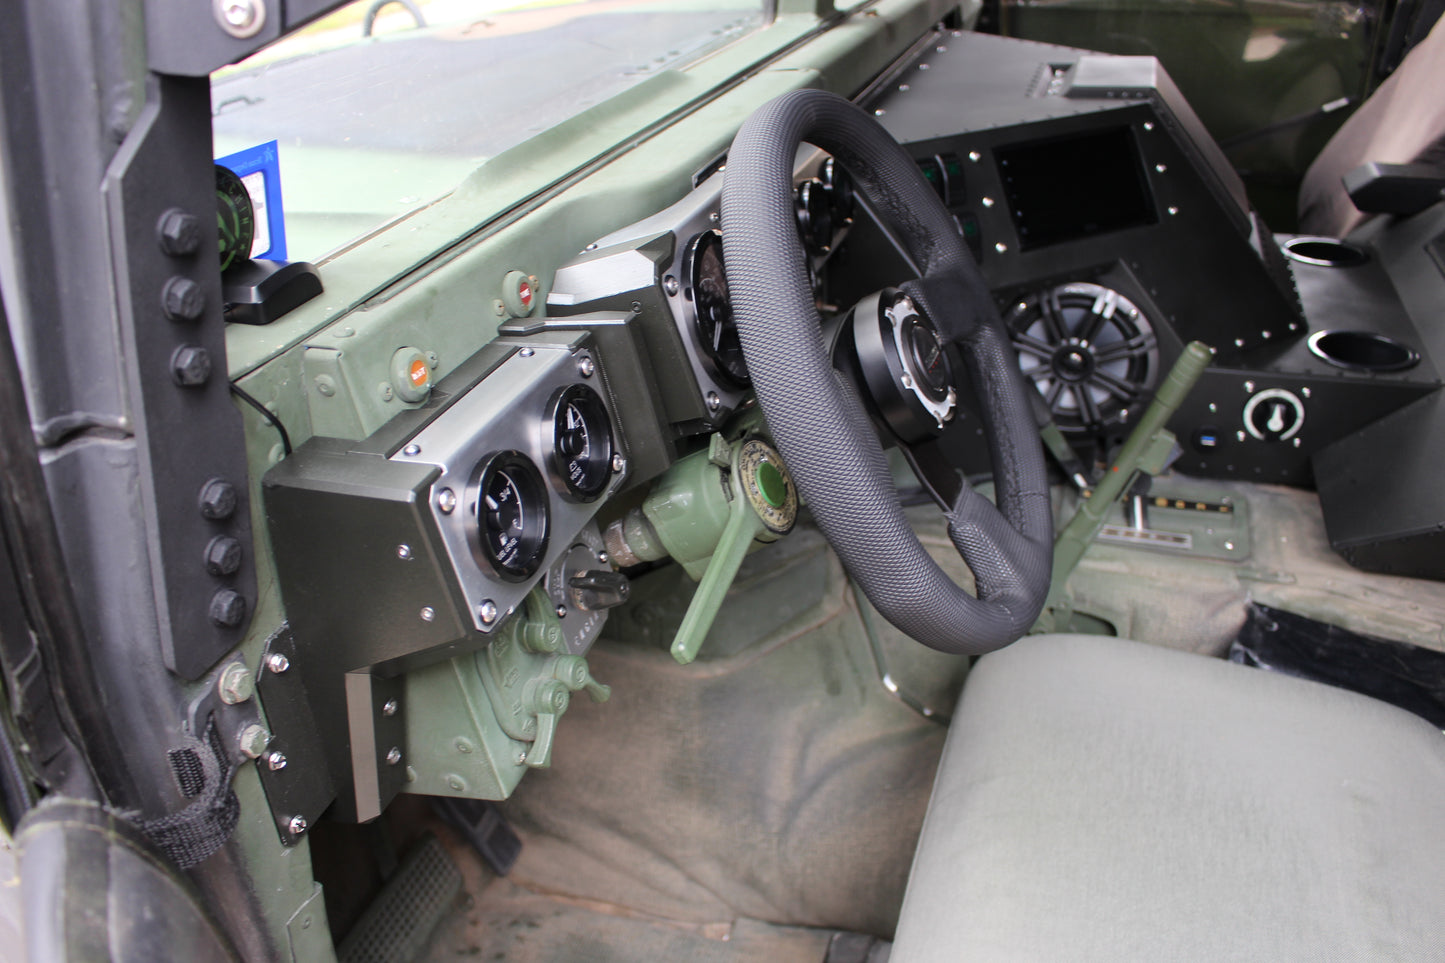 Humvee ® Front Dash Kit